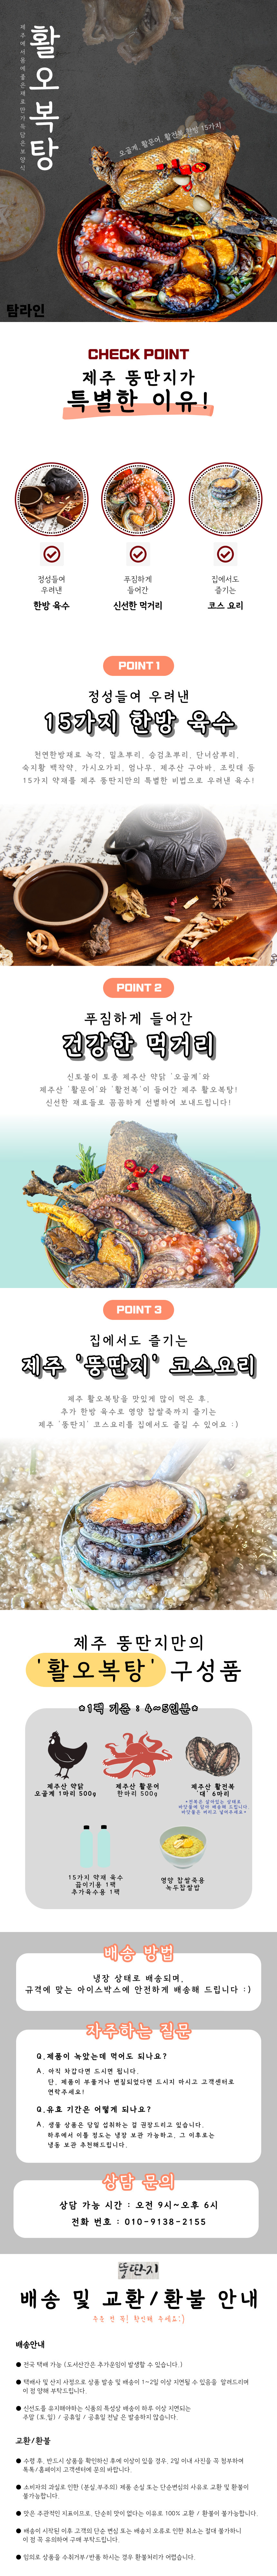 [탐라인]로컬푸드 제주 뚱딴지식당 특허받은 오복탕 중